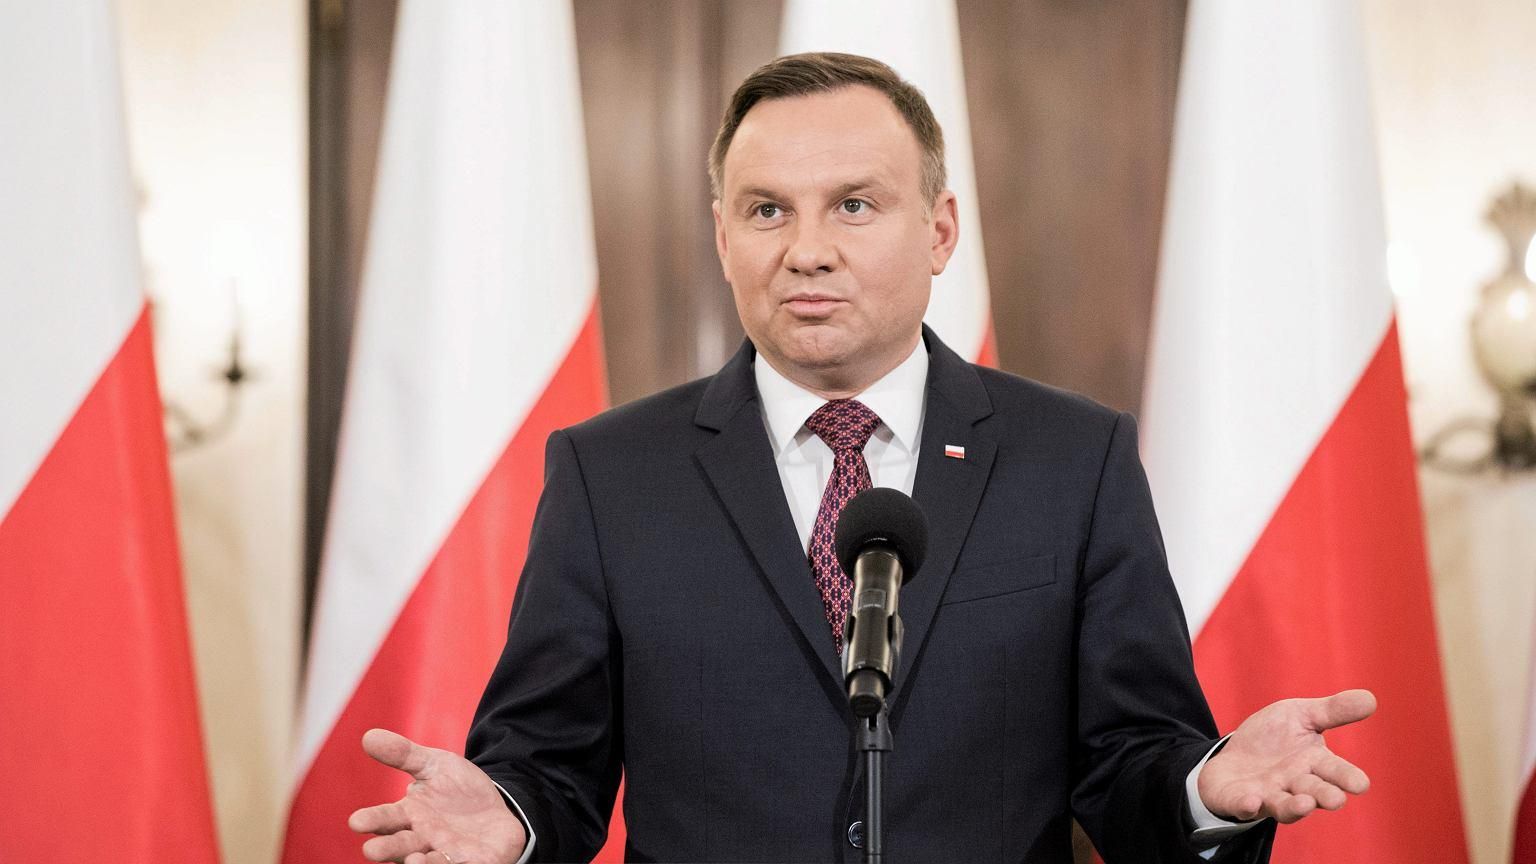 "Завтра может умереть Дуда": в Польше задержали мужчину, который угрожал президенту